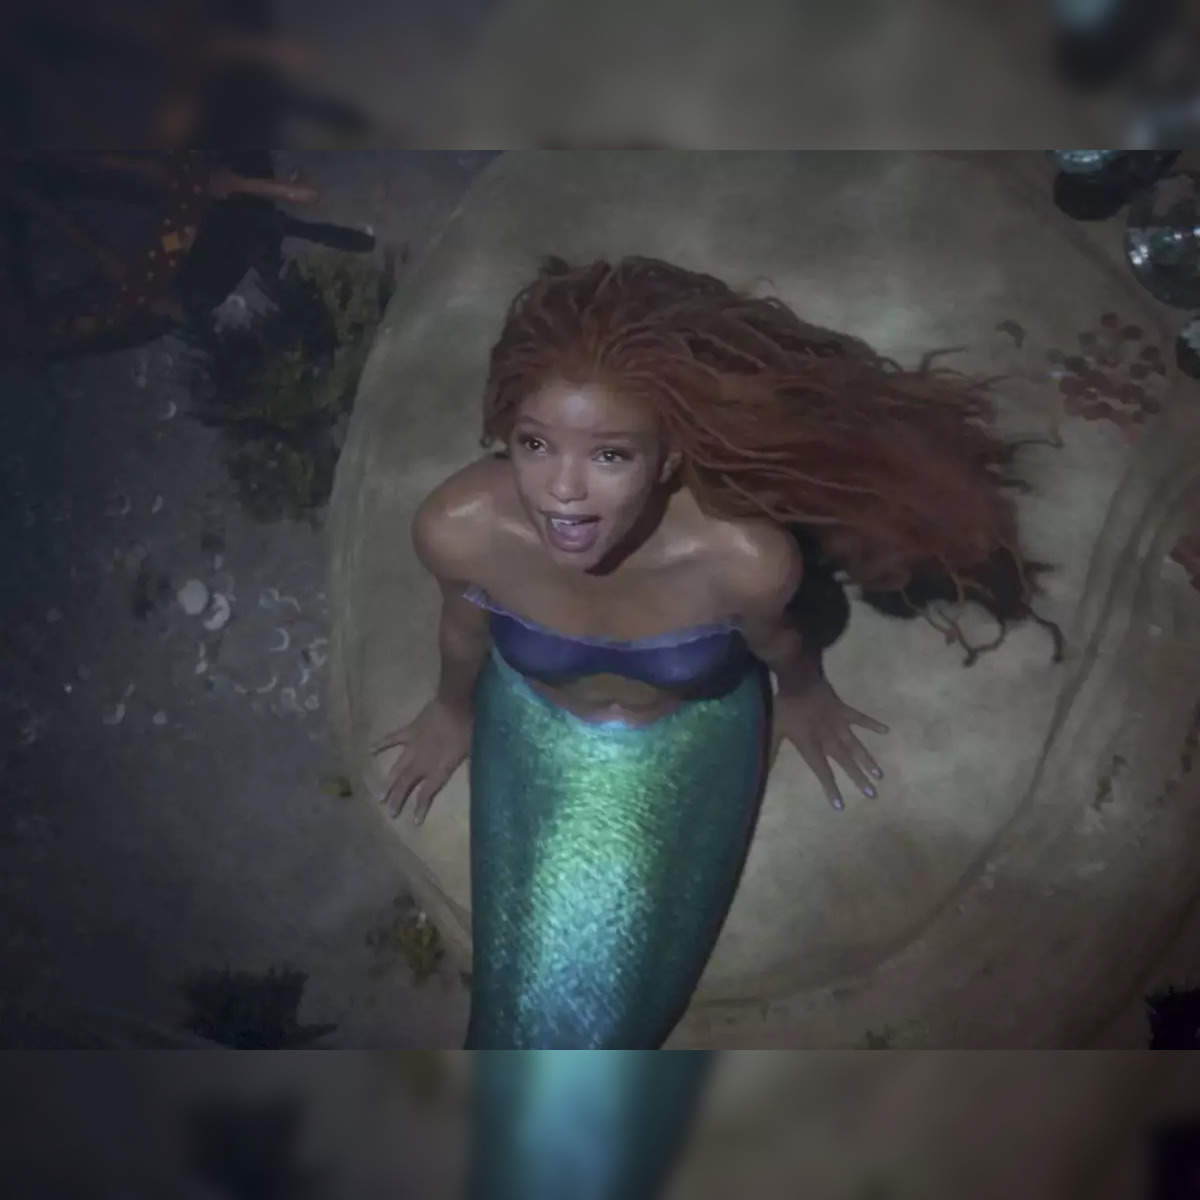 Disney Style Mermaid: Animated Slideshow! 